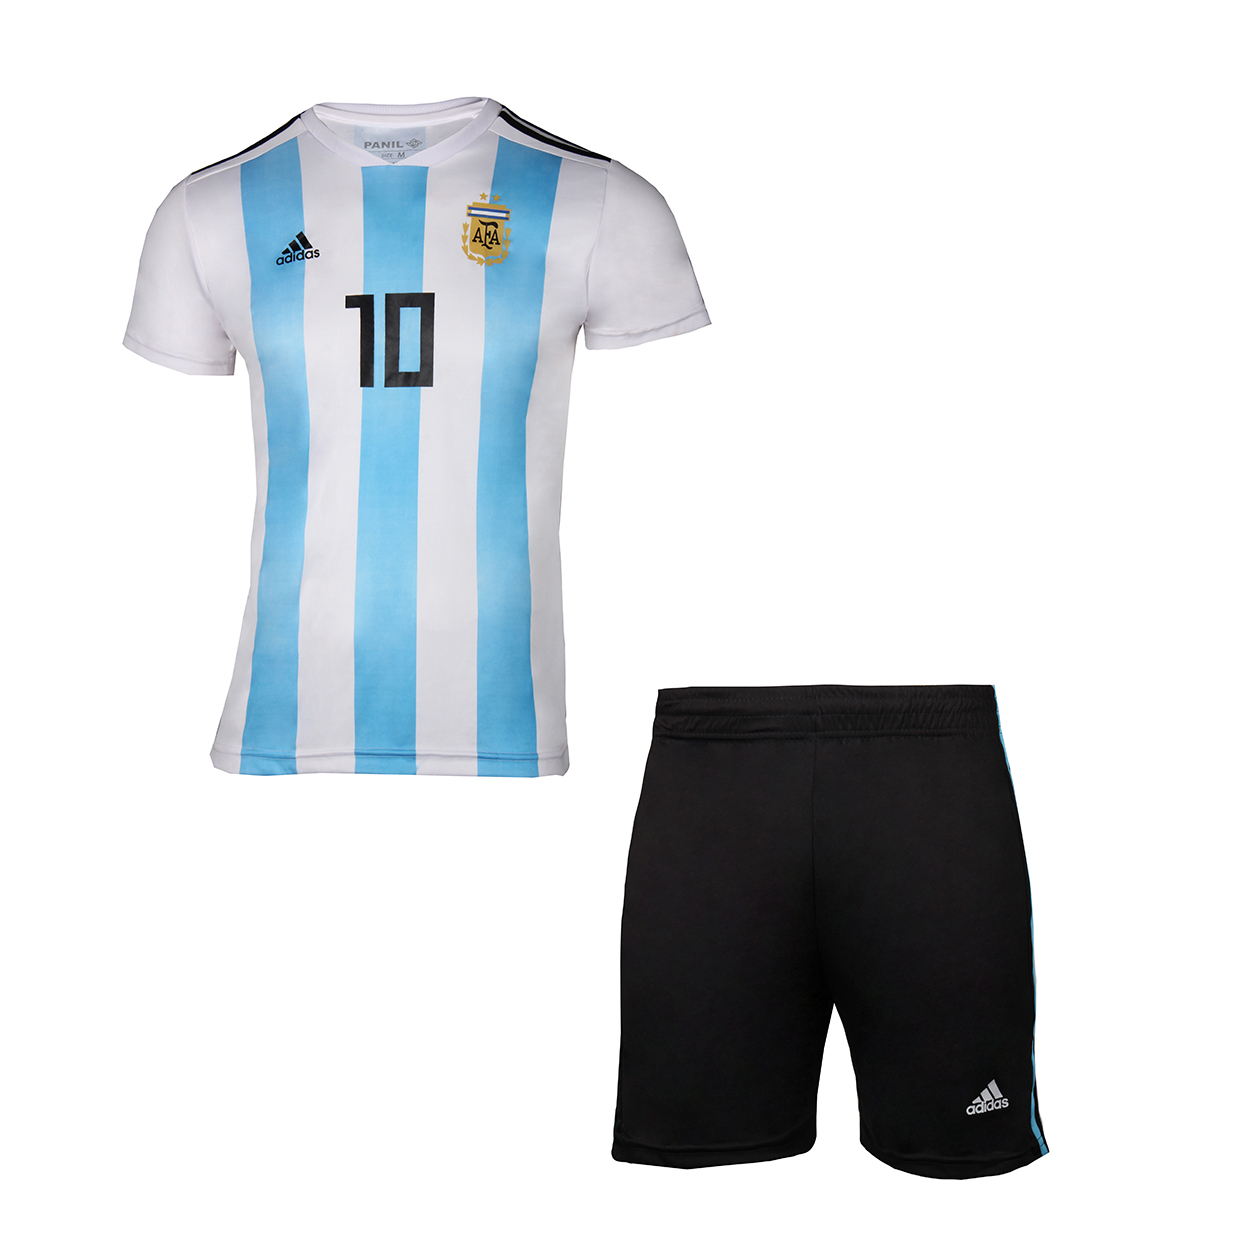 ست تی شرت و شلوارک ورزشی پسرانه طرح تیم آرژانتین کد 3047